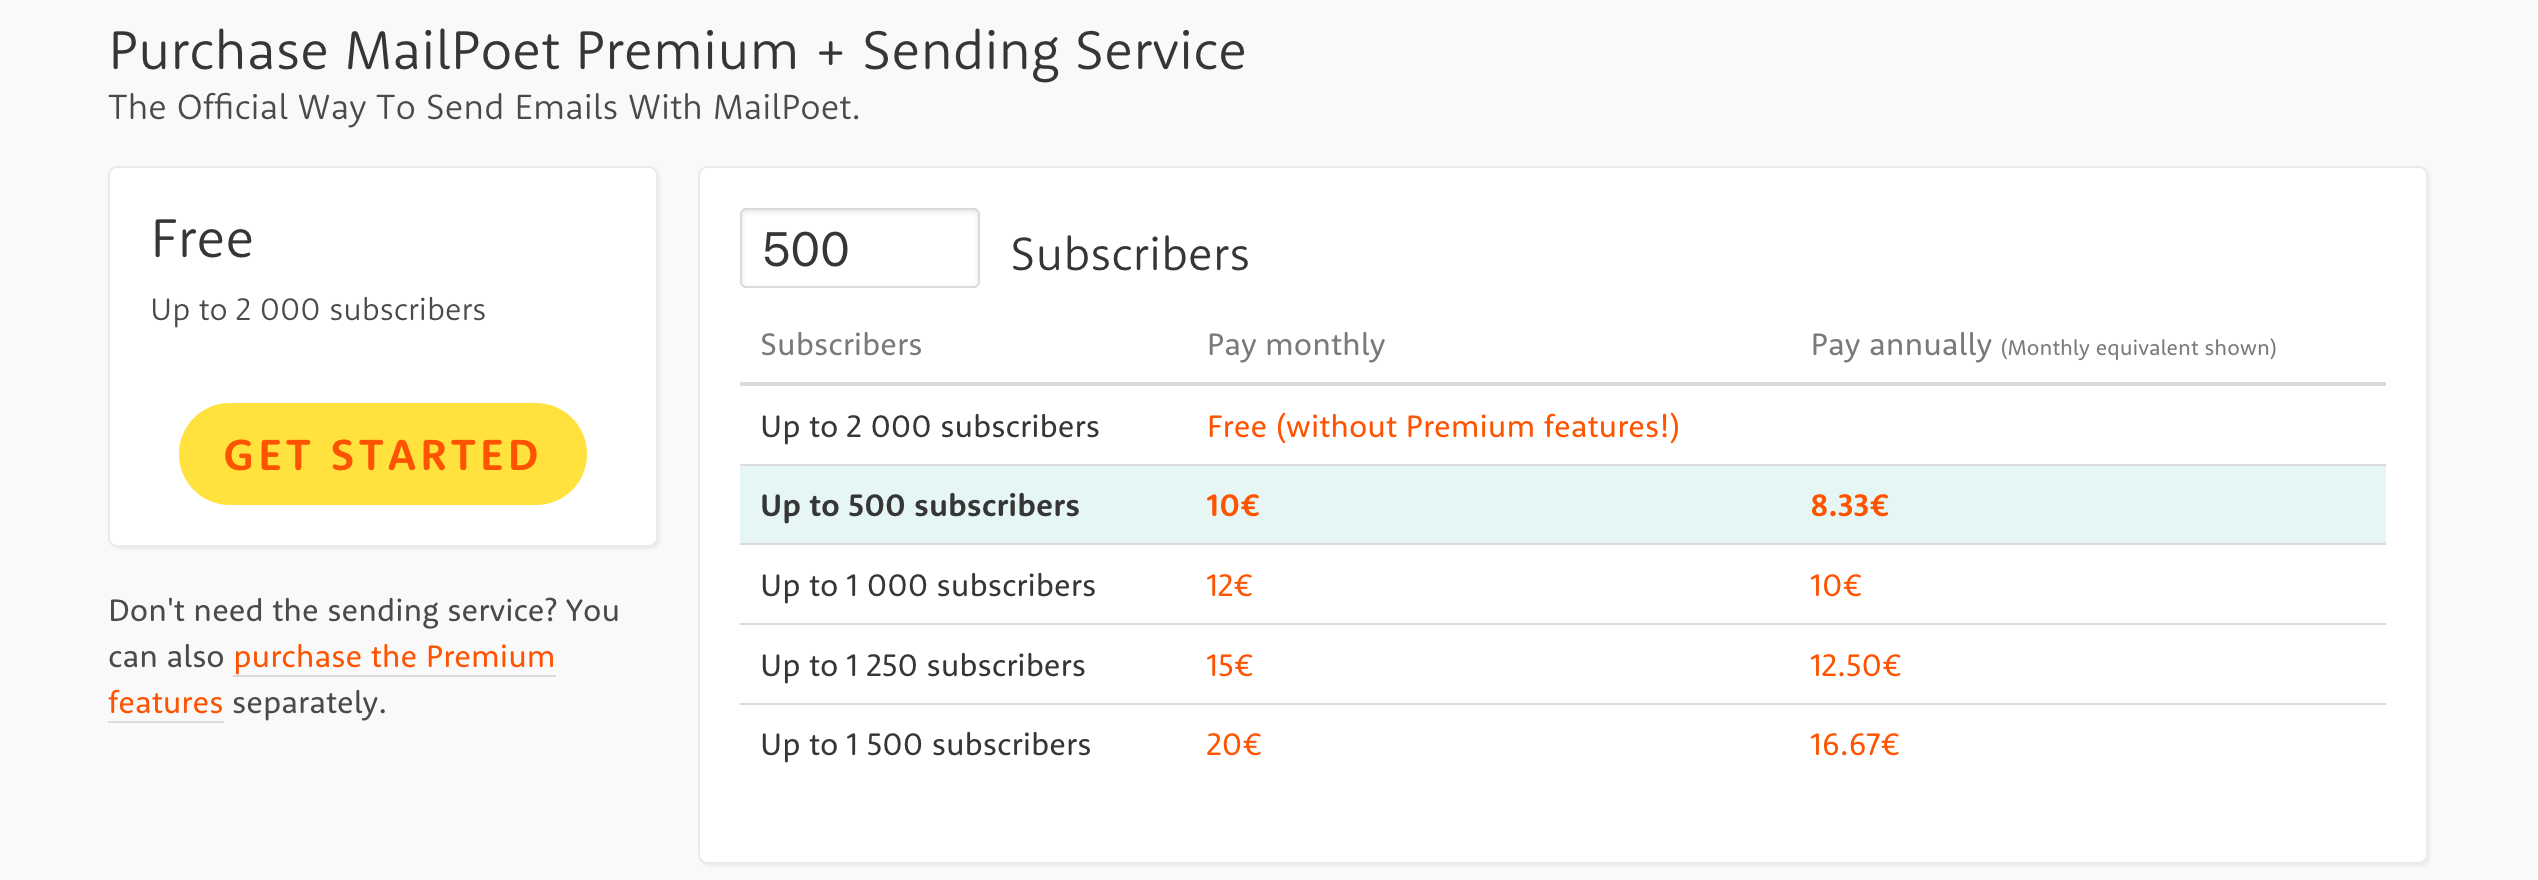 MailPoet Premium and Sending Service